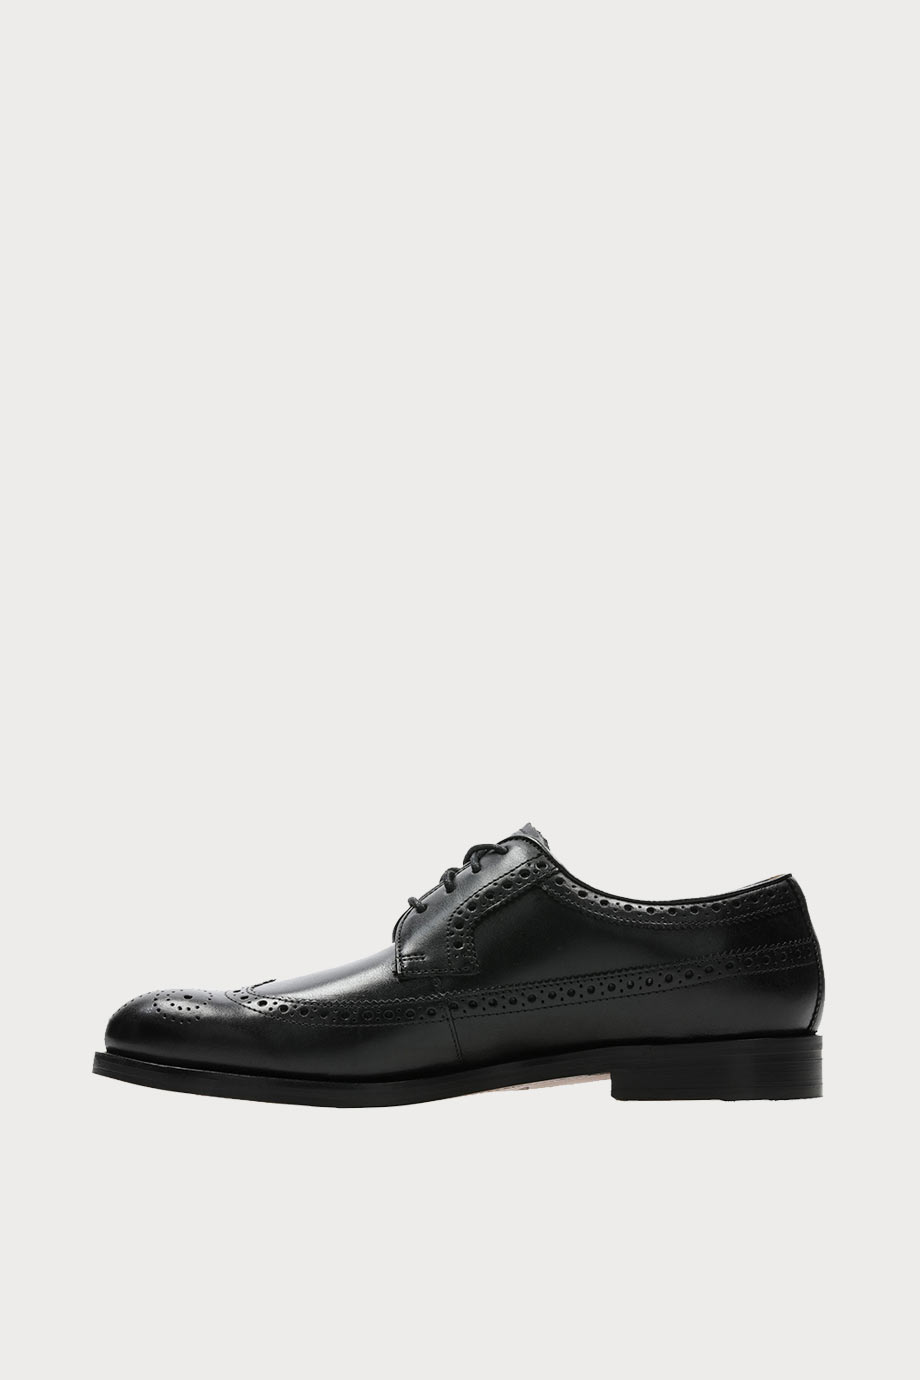 spiridoula metheniti shoes xalkida p coling limit black leather clarks 5